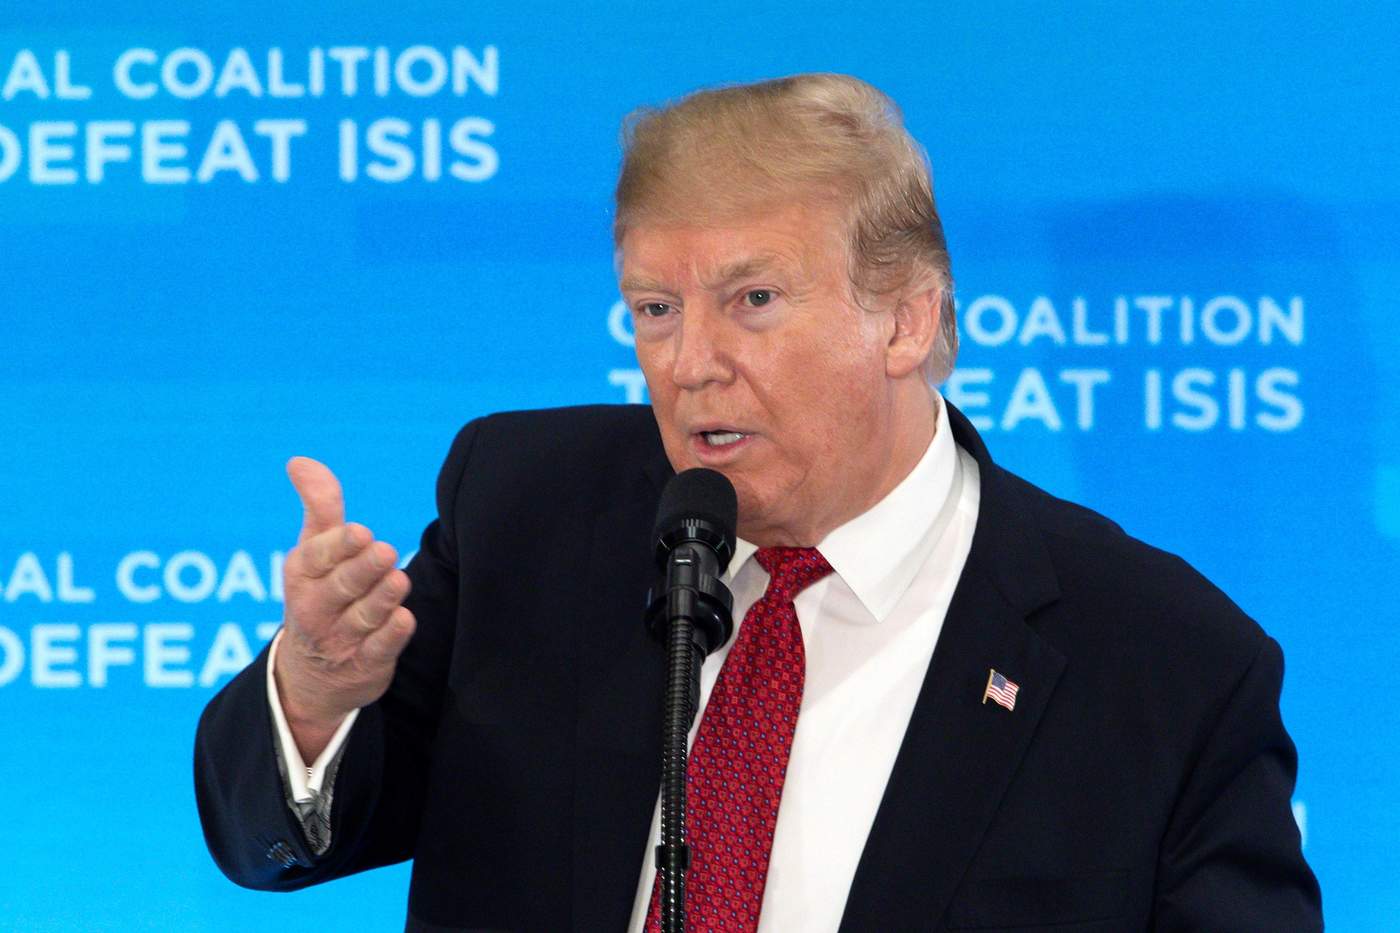 Trump afirmó que Estados Unidos no se rendirá en la lucha contra los vestigios de la organización extremista pese a su decisión de retirar a los soldados estadounidenses de Siria. (EFE)